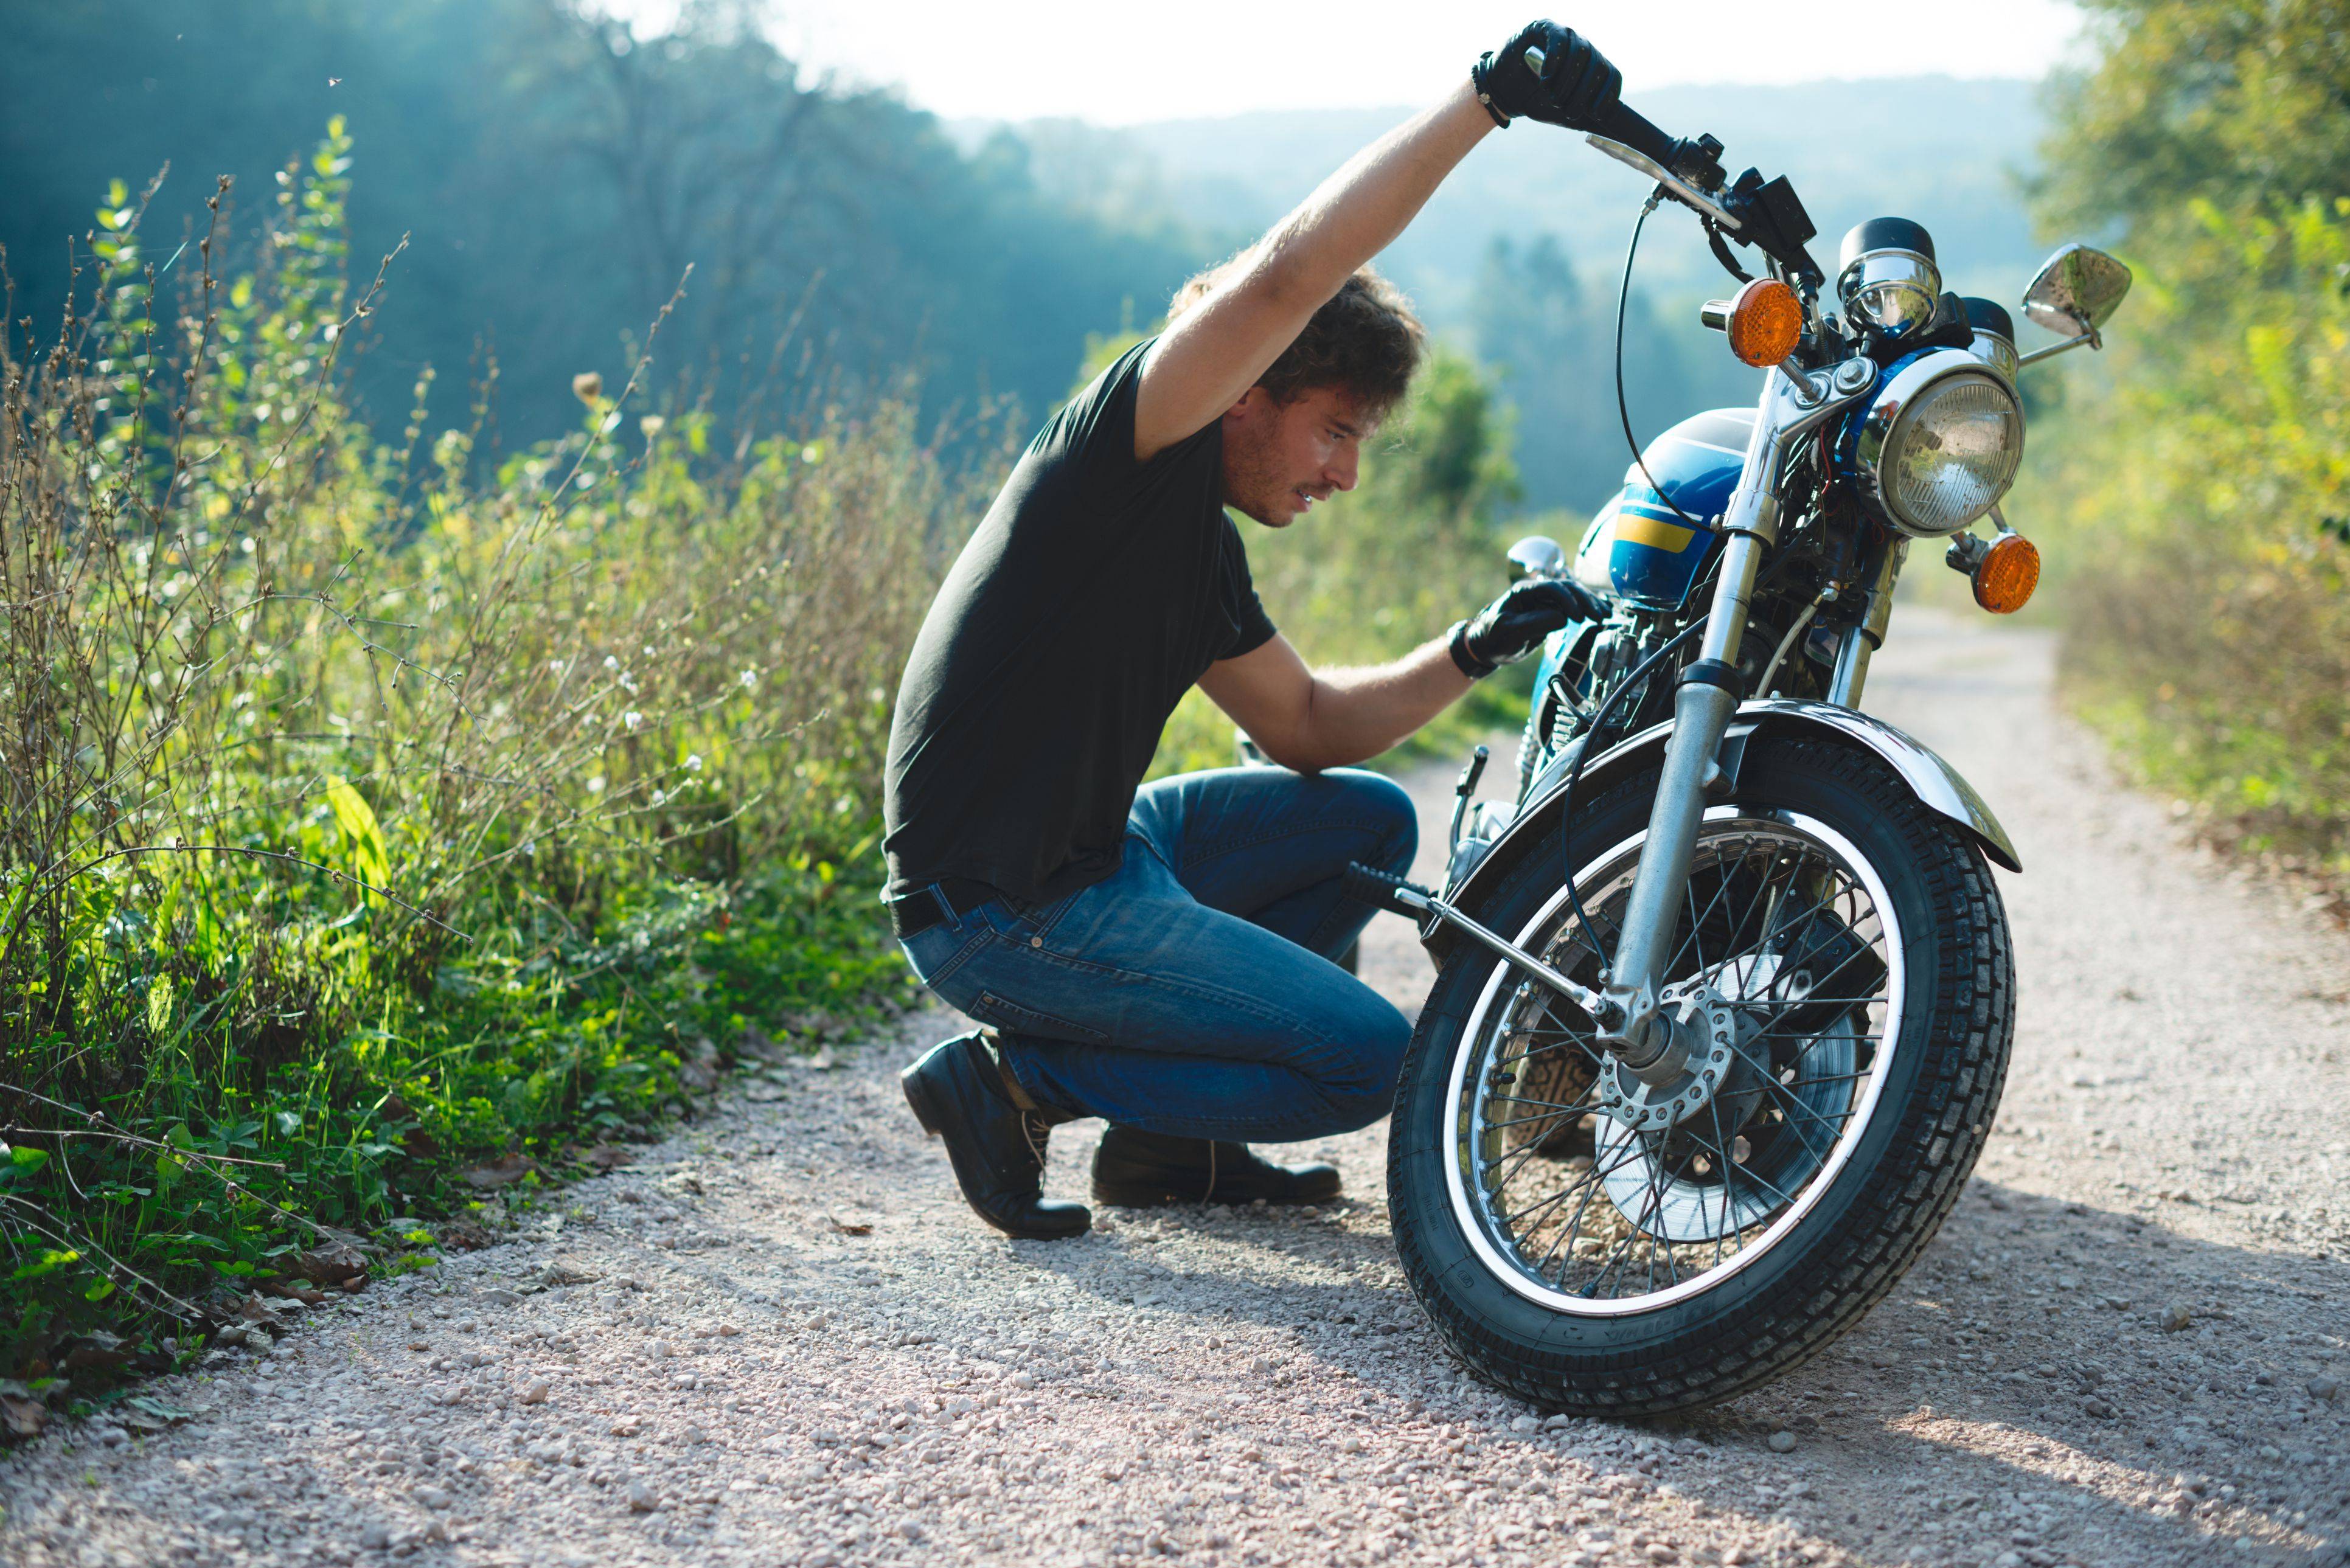 Советы начинающим мотоциклистам | motoehkipirovka.ru